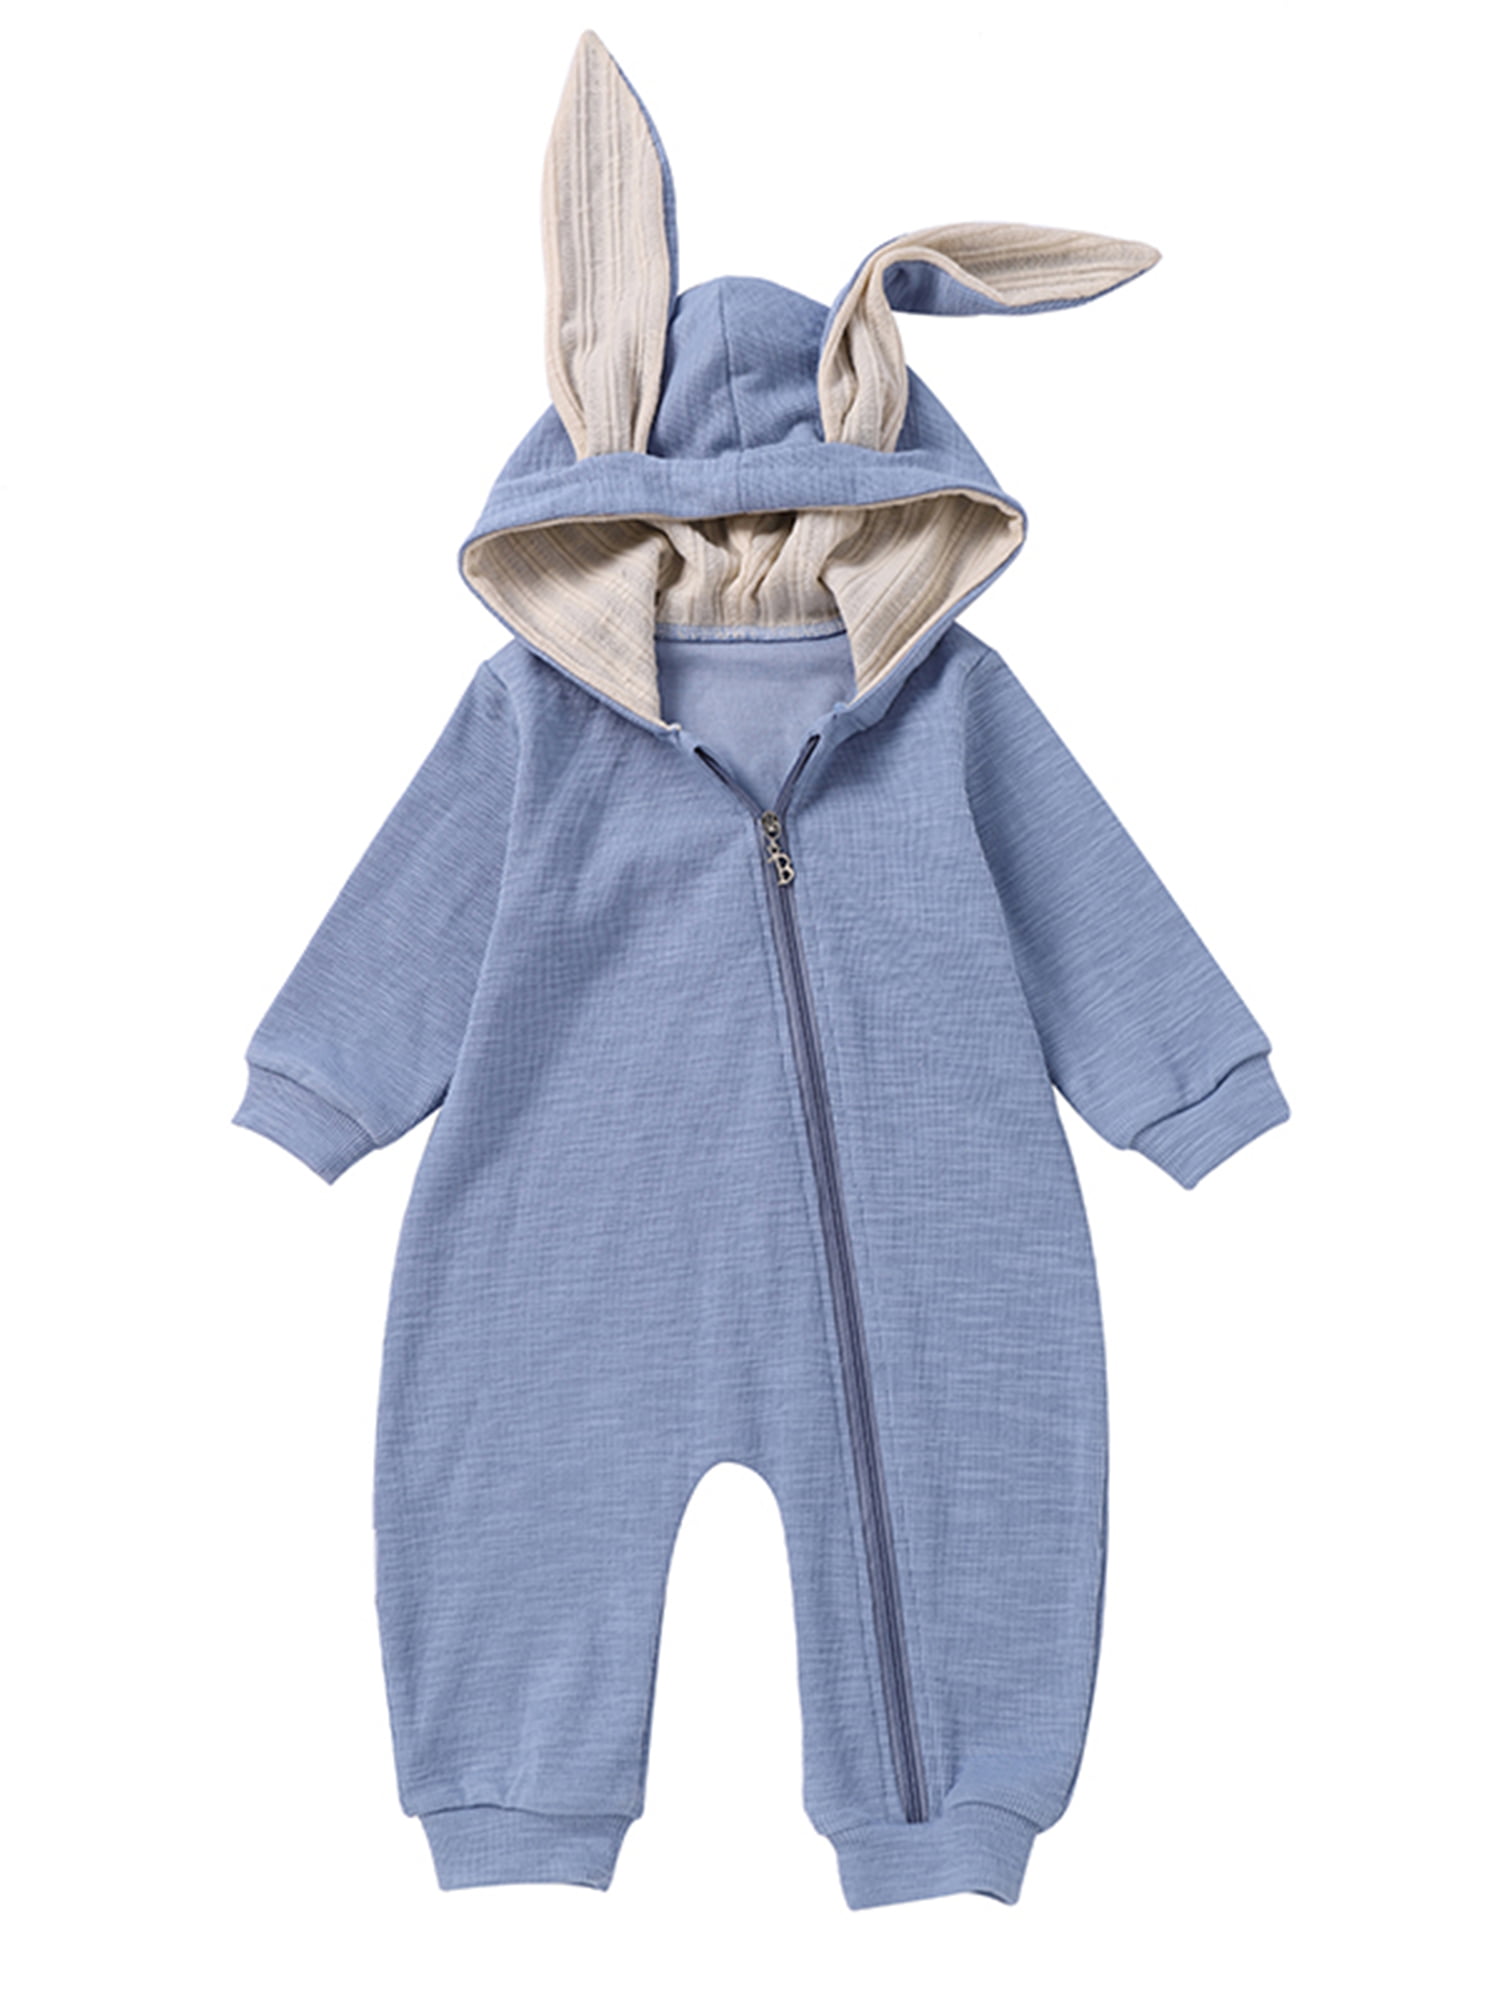 Bunny Ears Hoodie Long Sleeve Jumpsuit Kids Overall Romper Toddler Girl Clothing Unisex Kids Clothing Footies & Rompers 